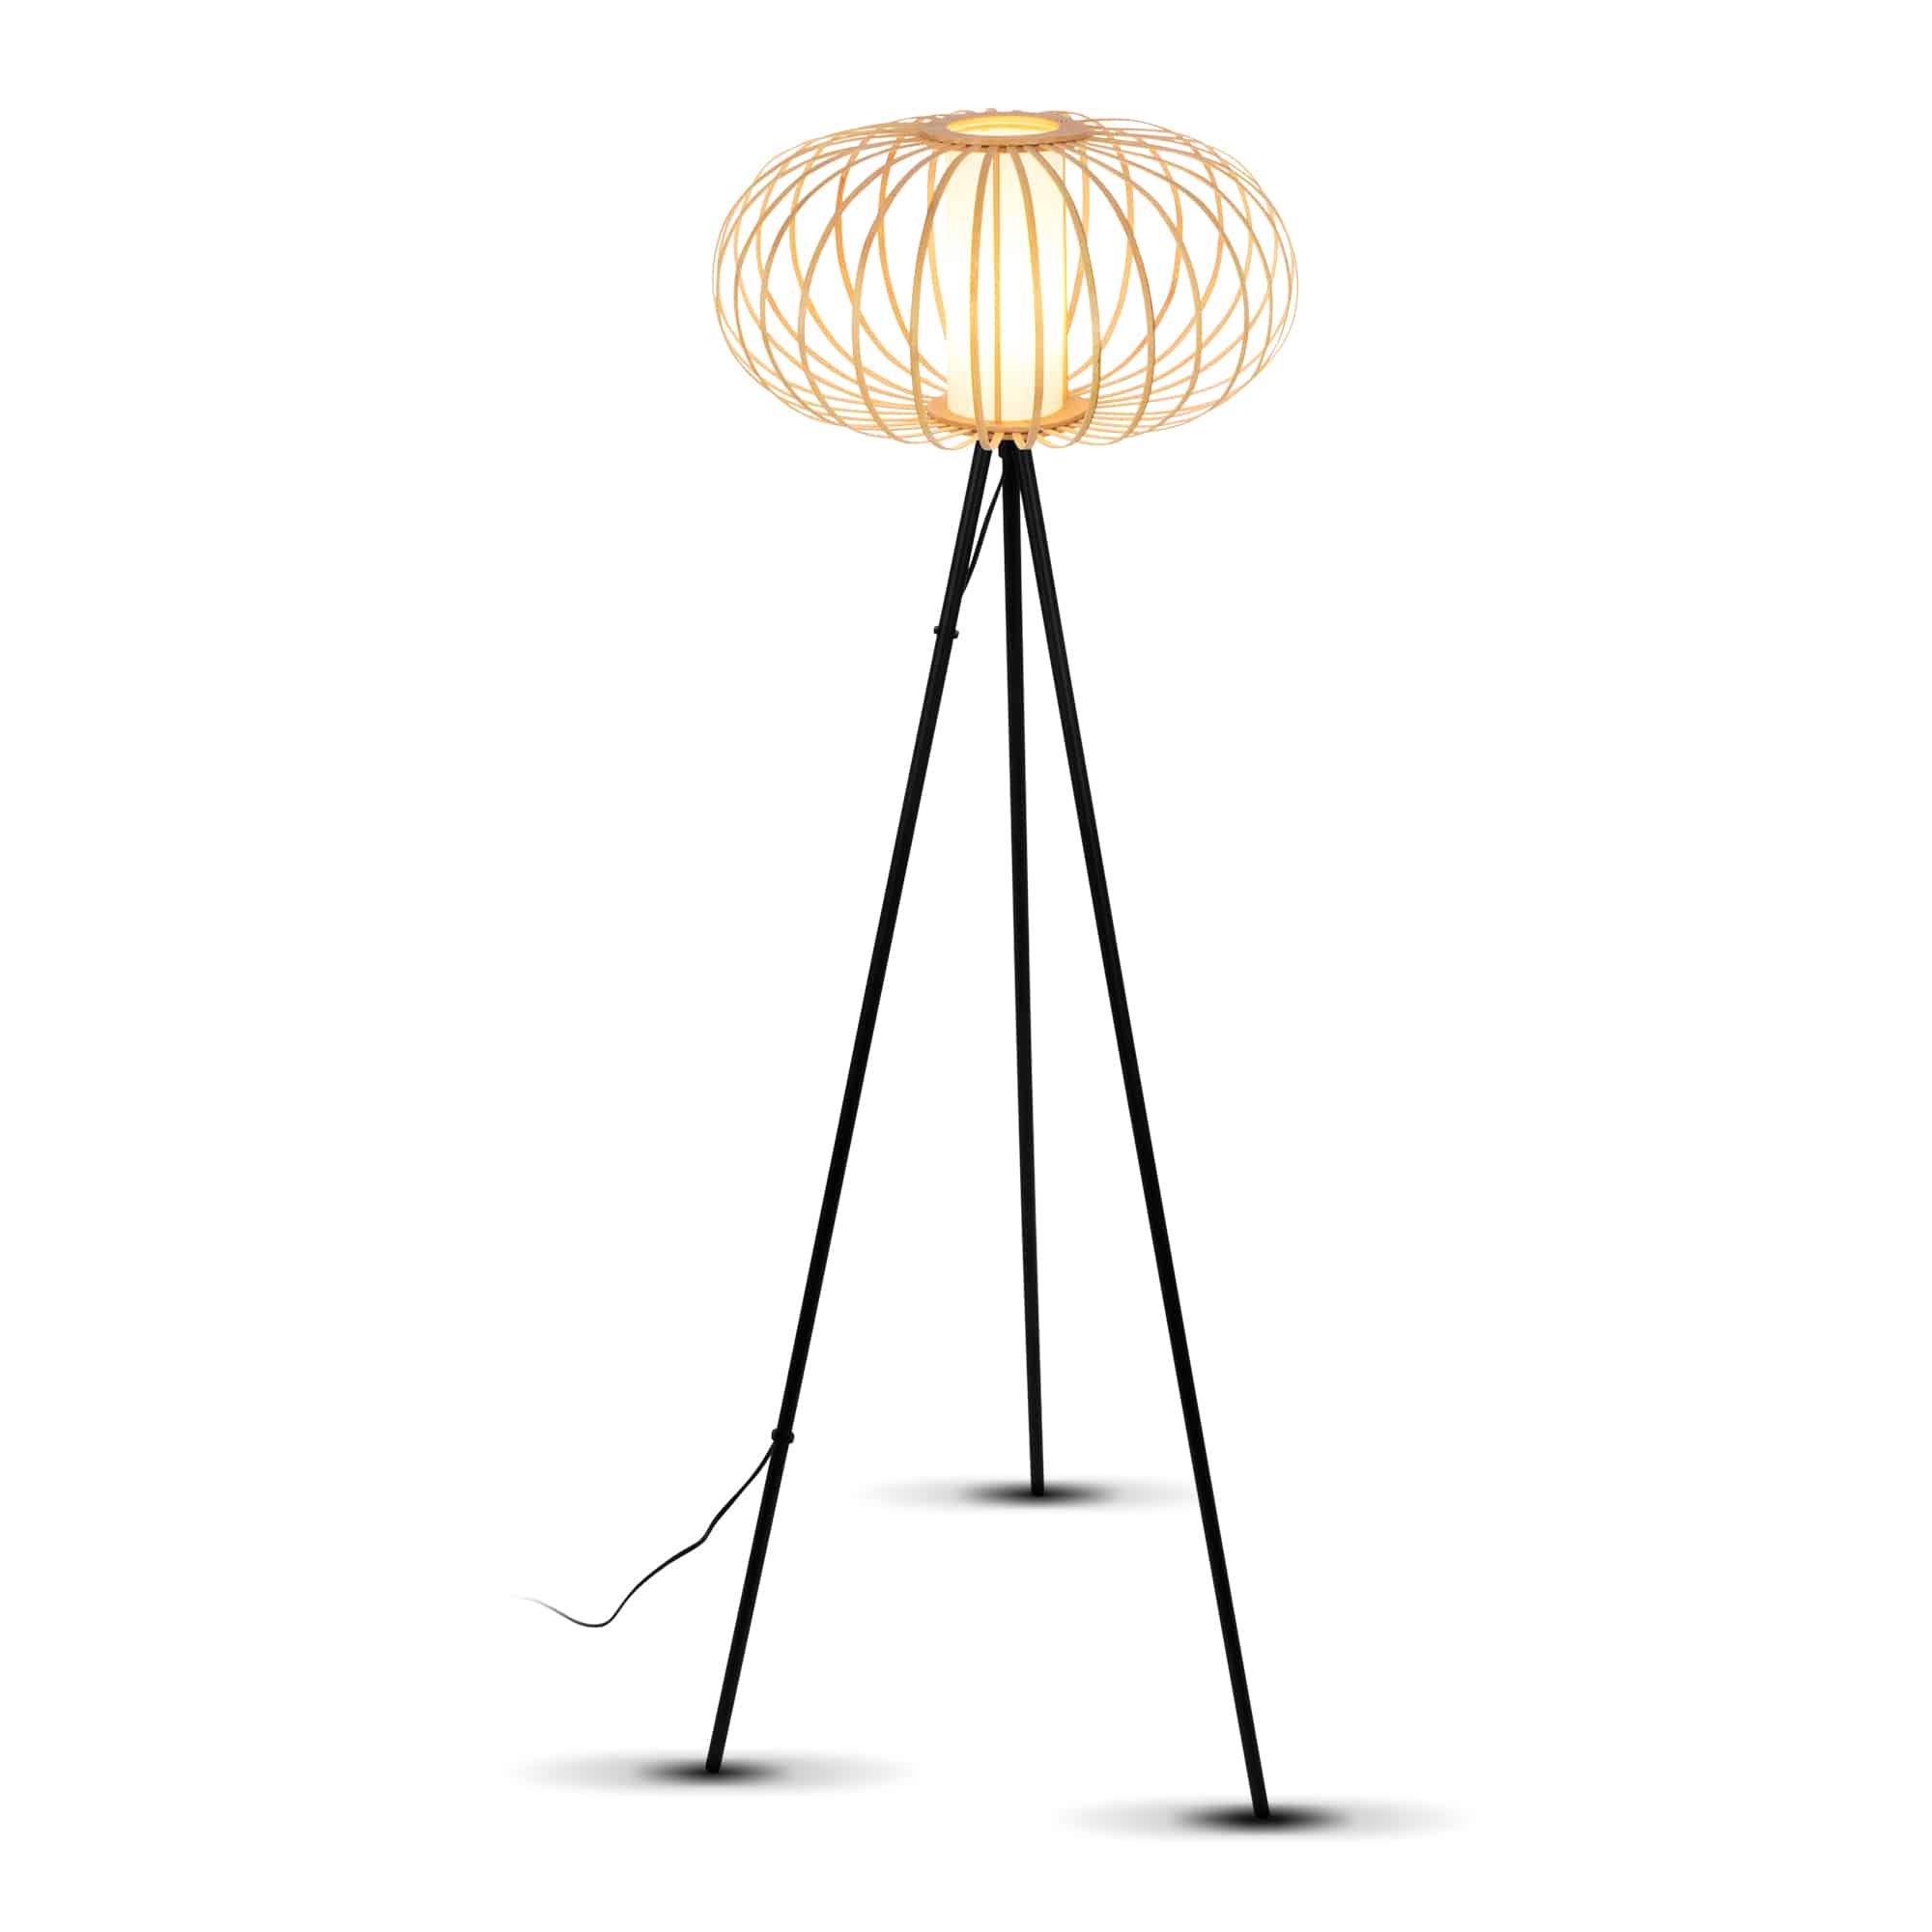 Lampe debout, 153 cm, 1x e27, max. 10W, couleurs en bois